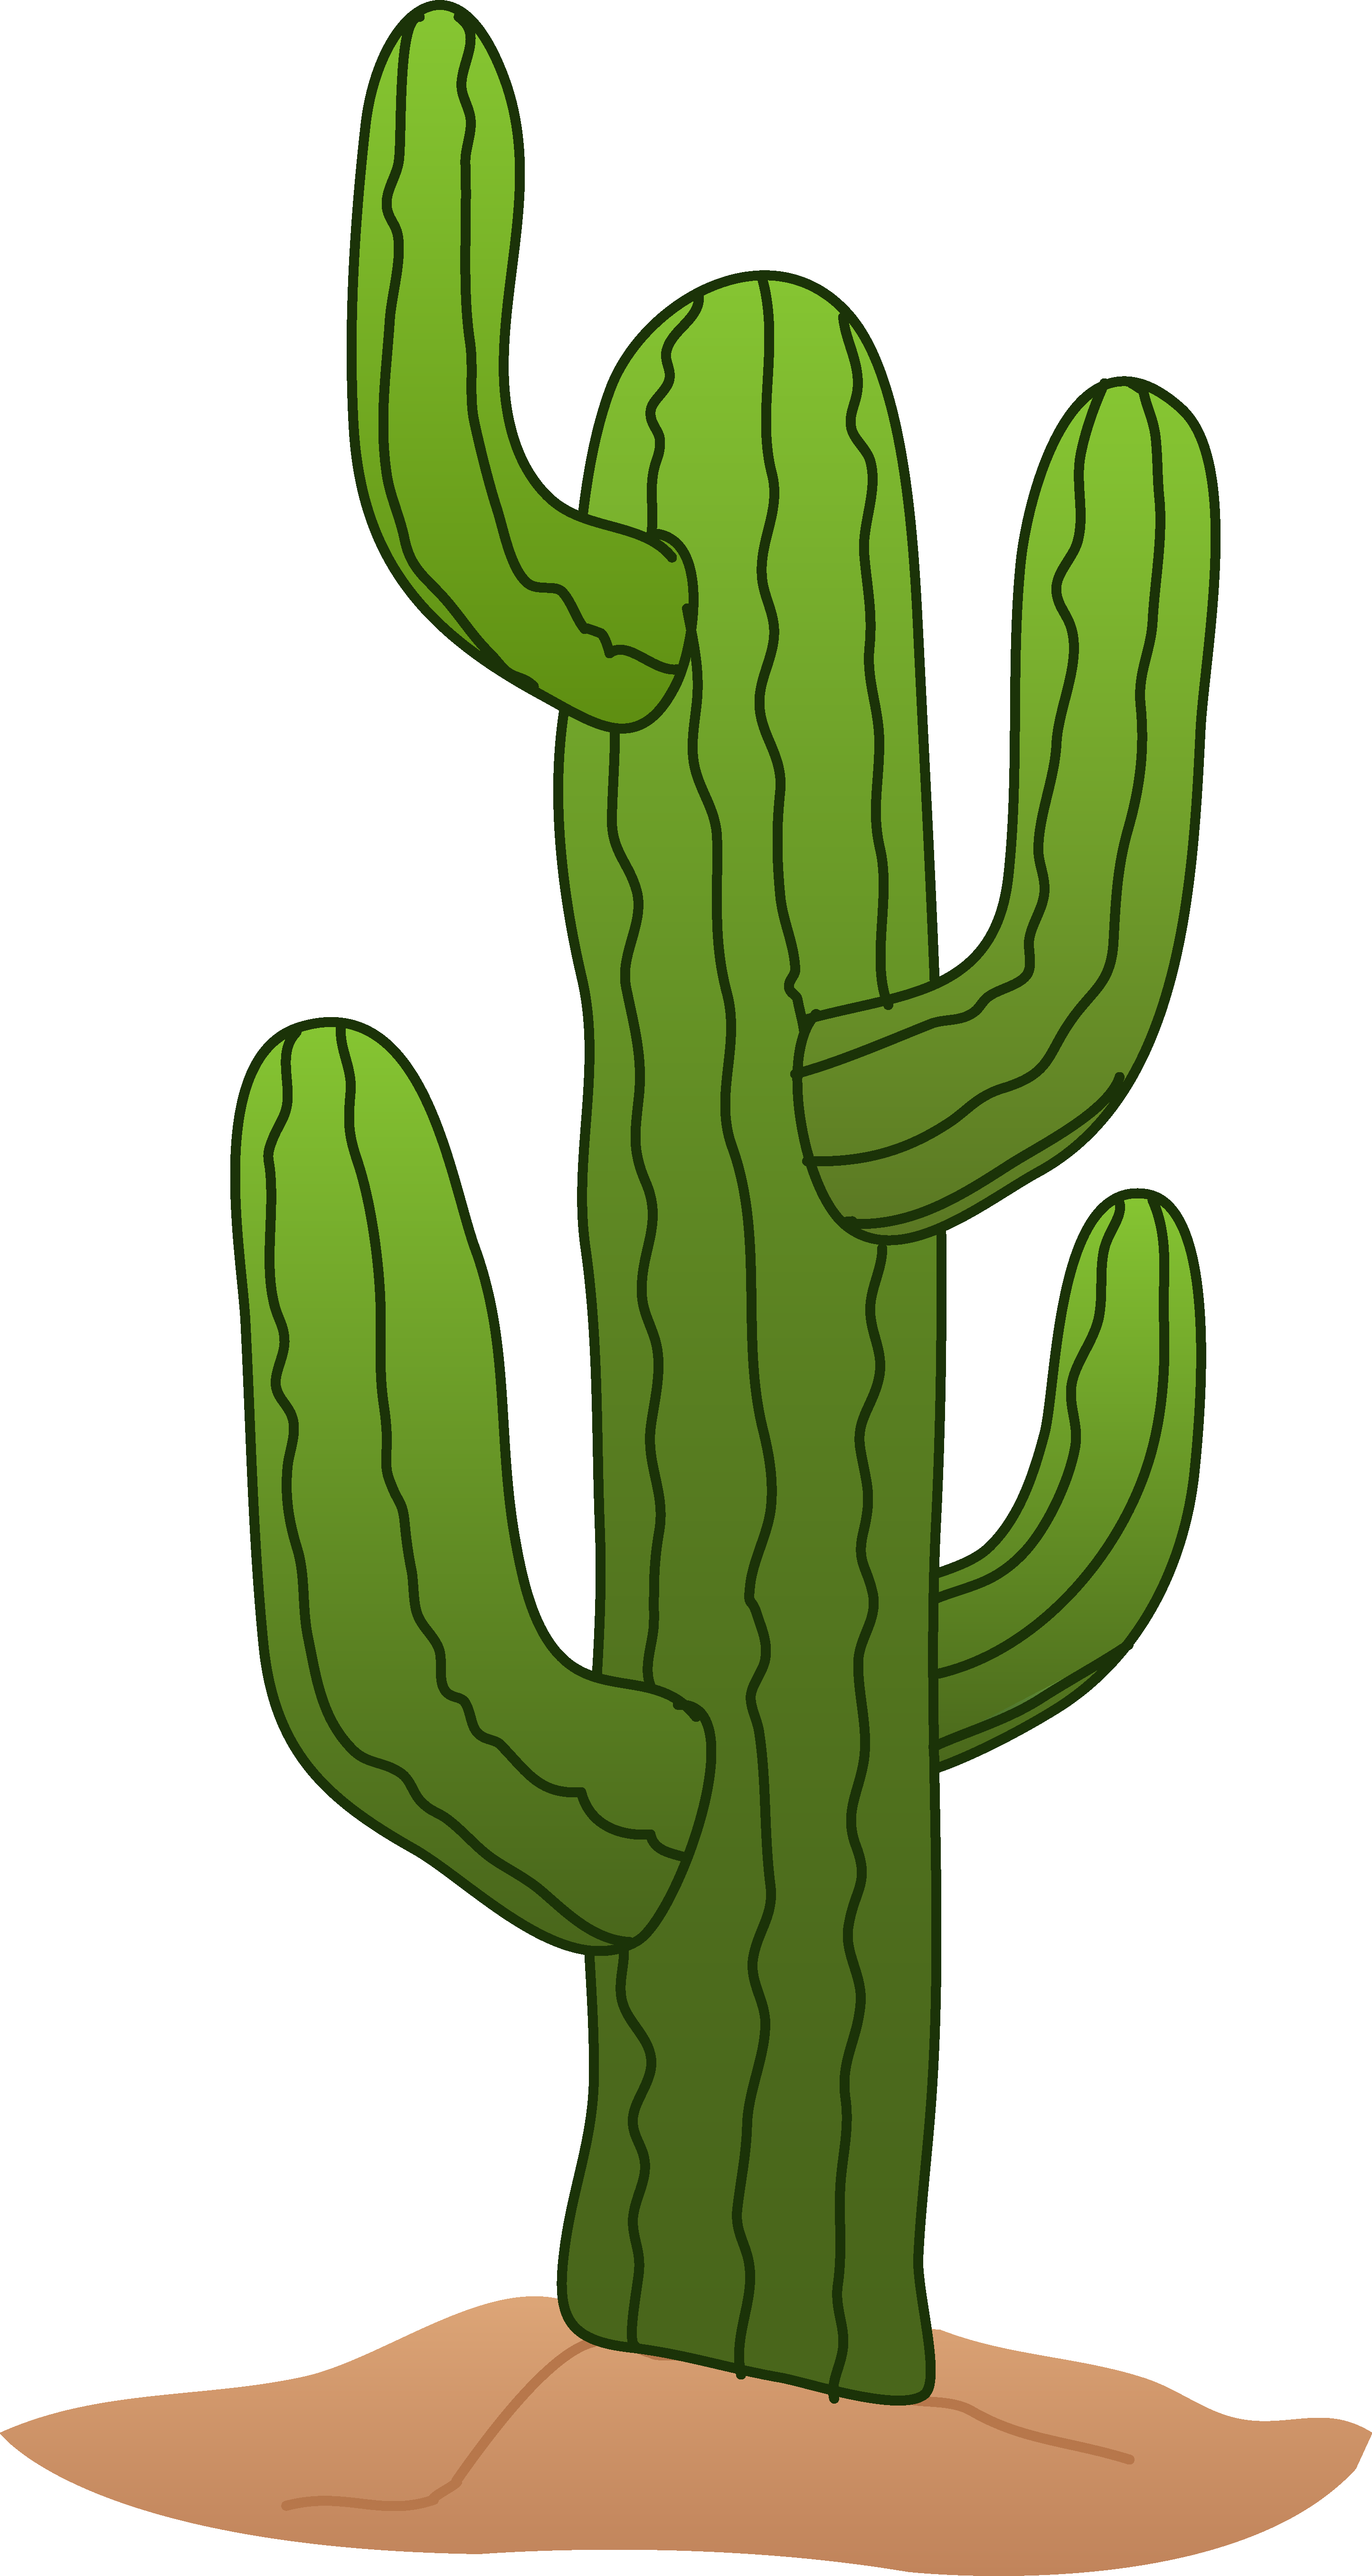 Cactus Images Free